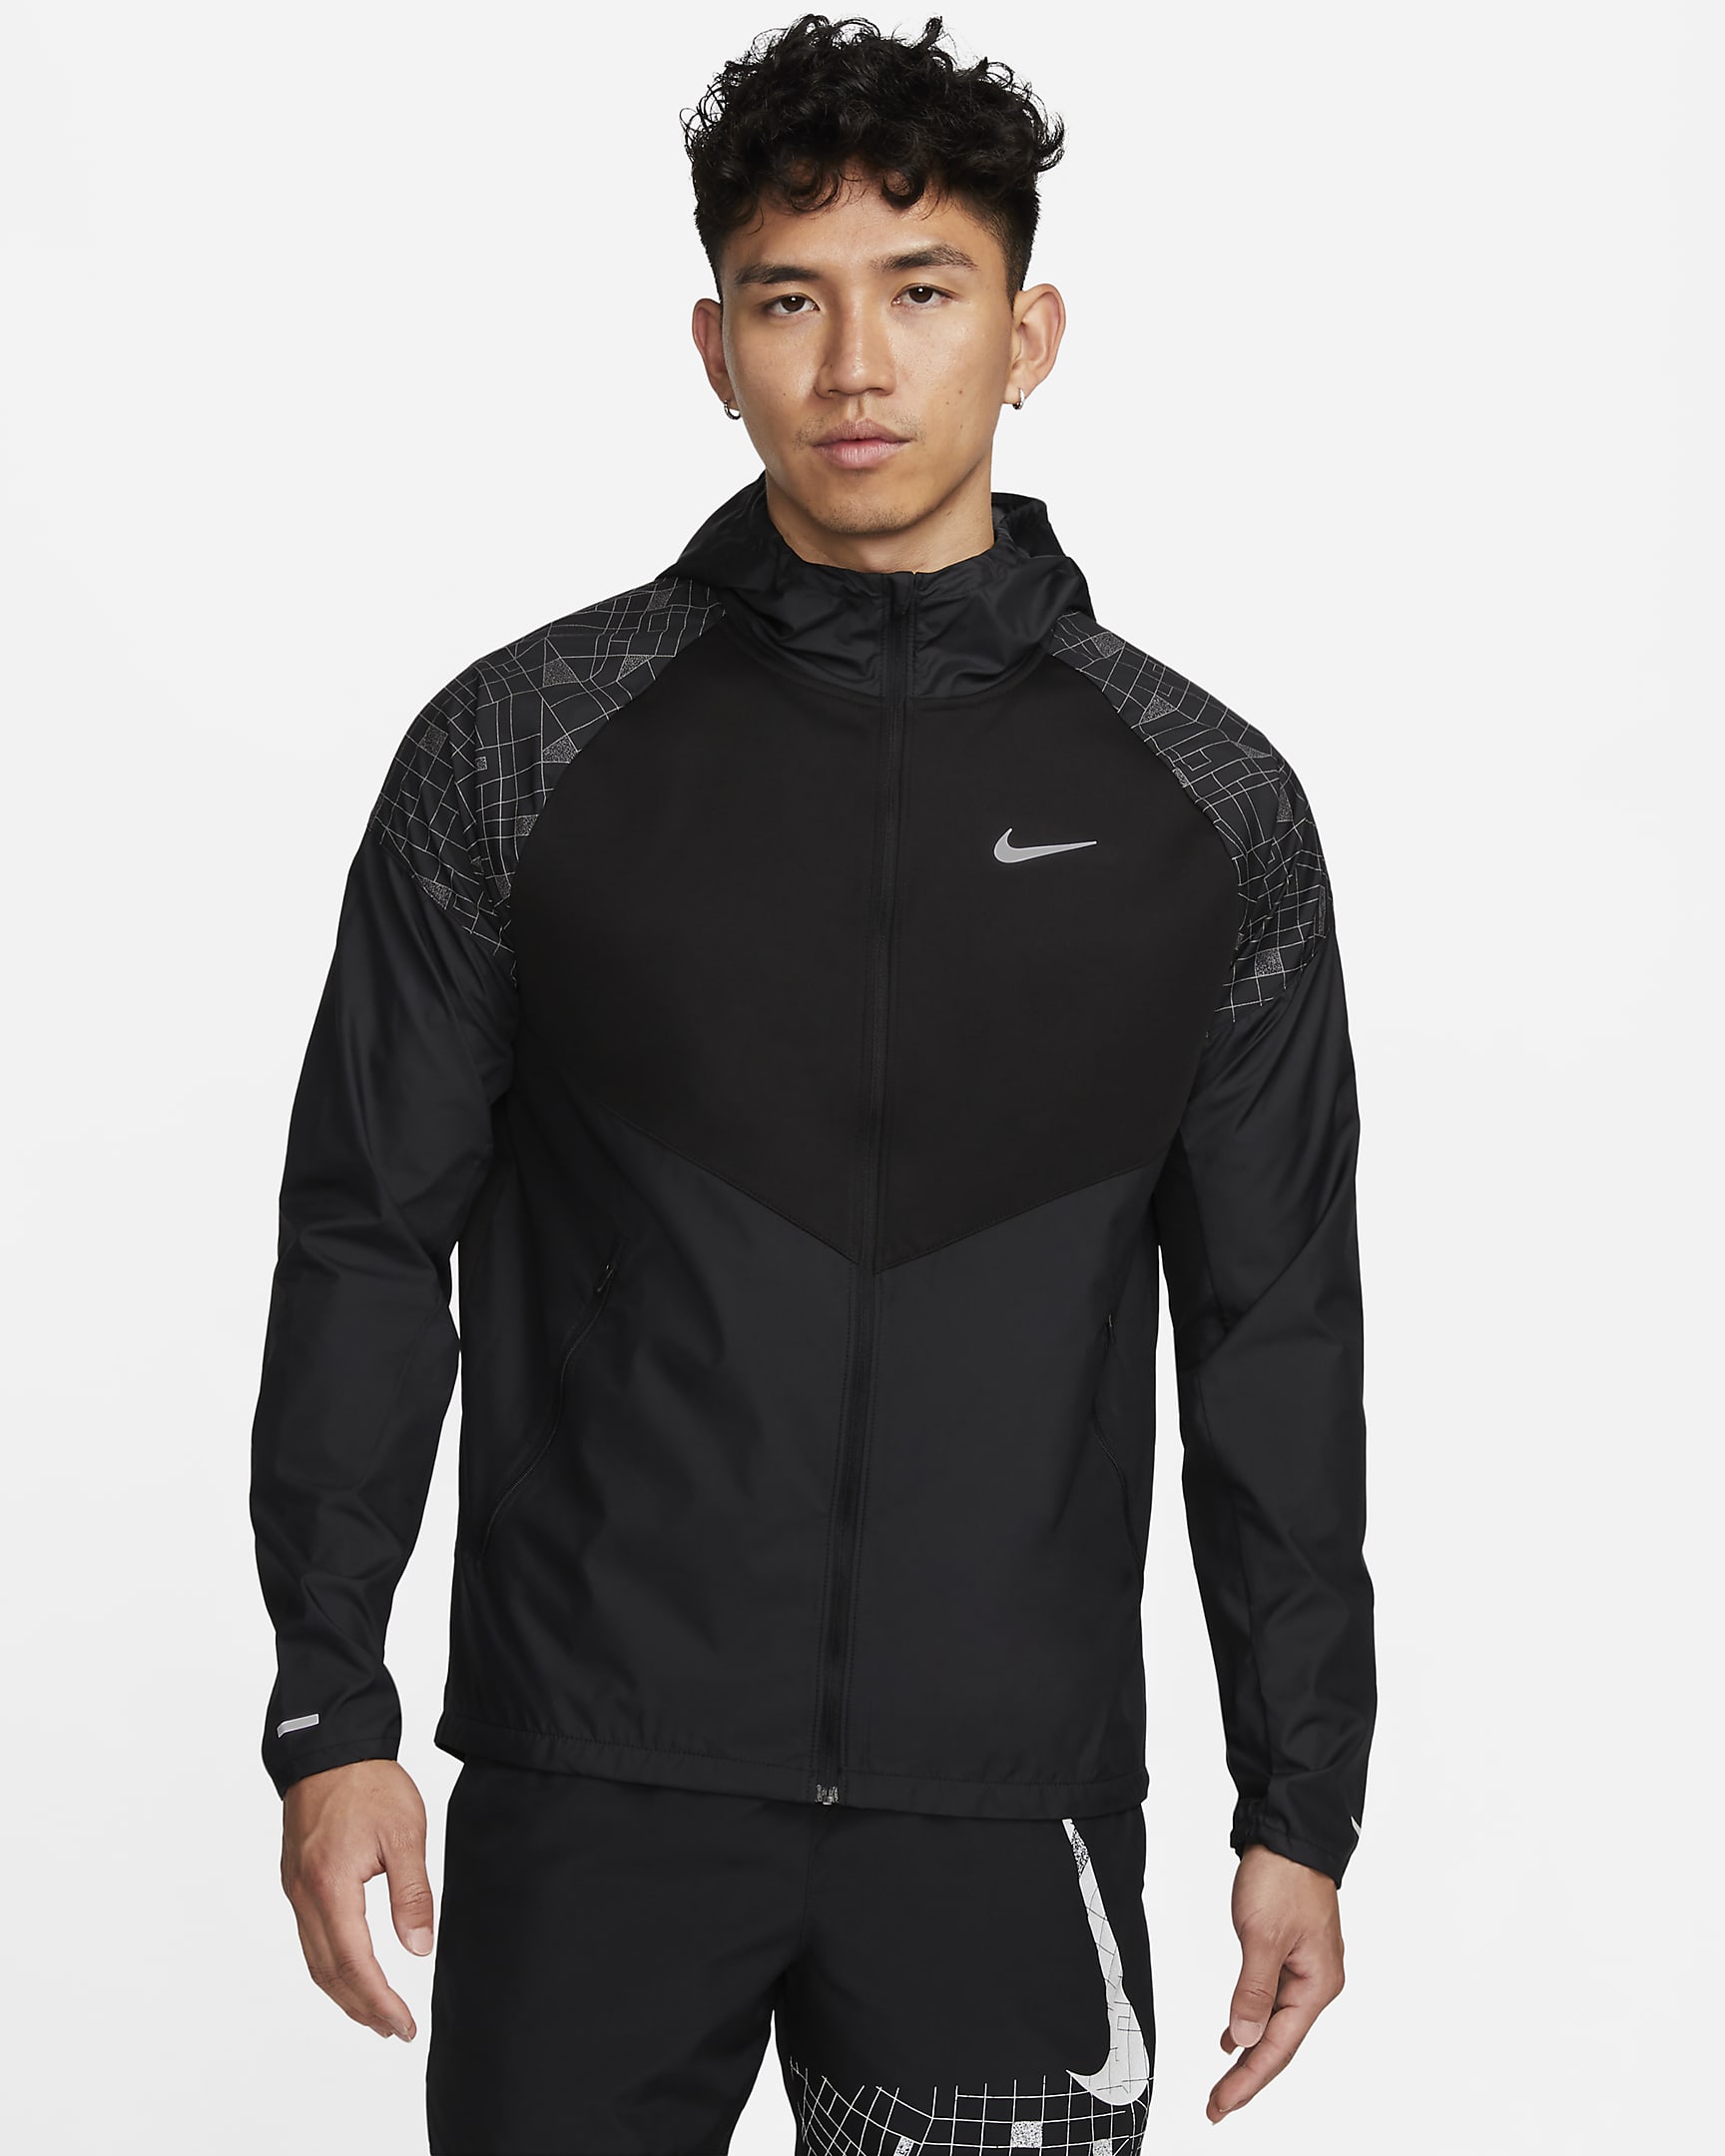 Nike Run Division Miler Men's Flash Running Jacket. Nike SG